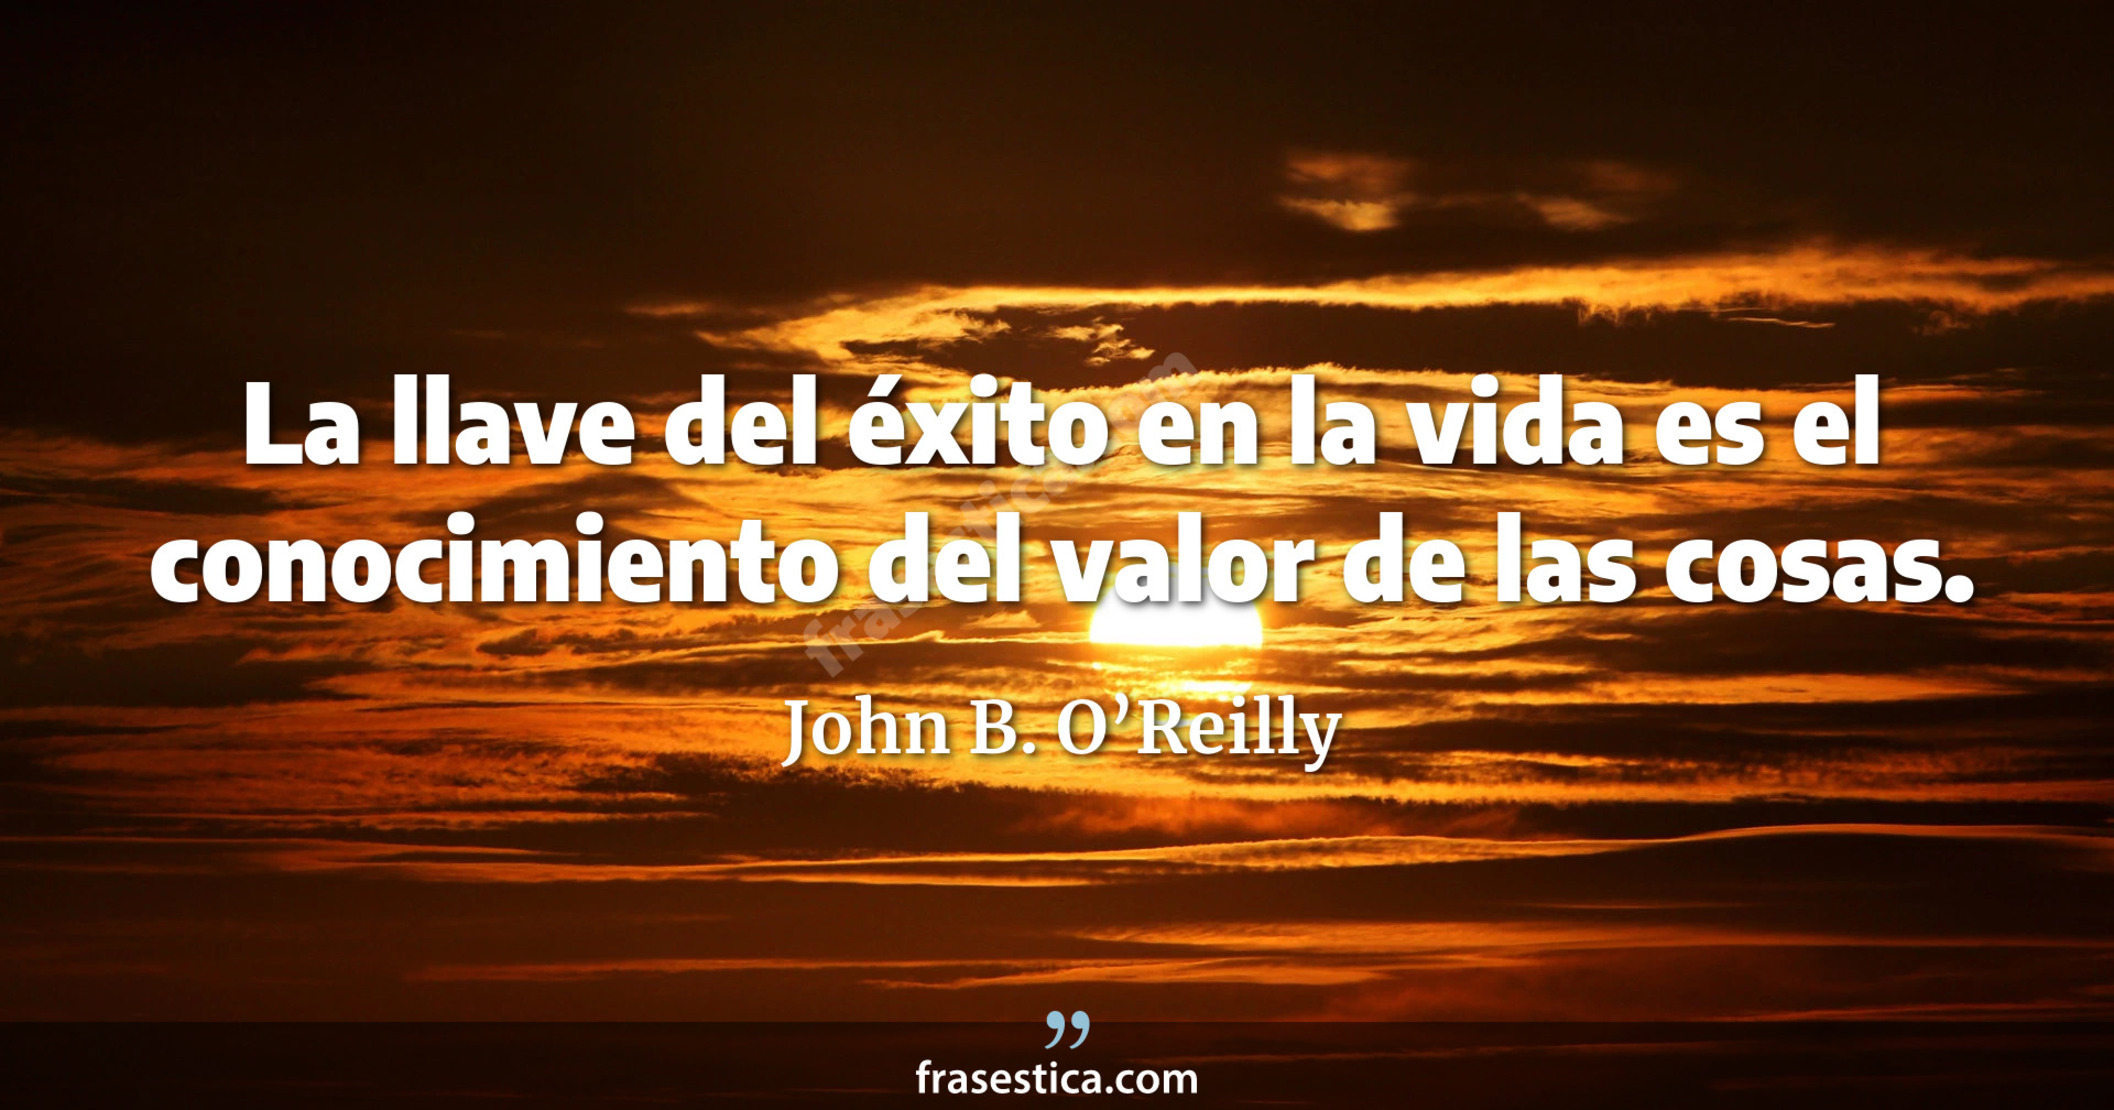 La llave del éxito en la vida es el conocimiento del valor de las cosas. - John B. O’Reilly